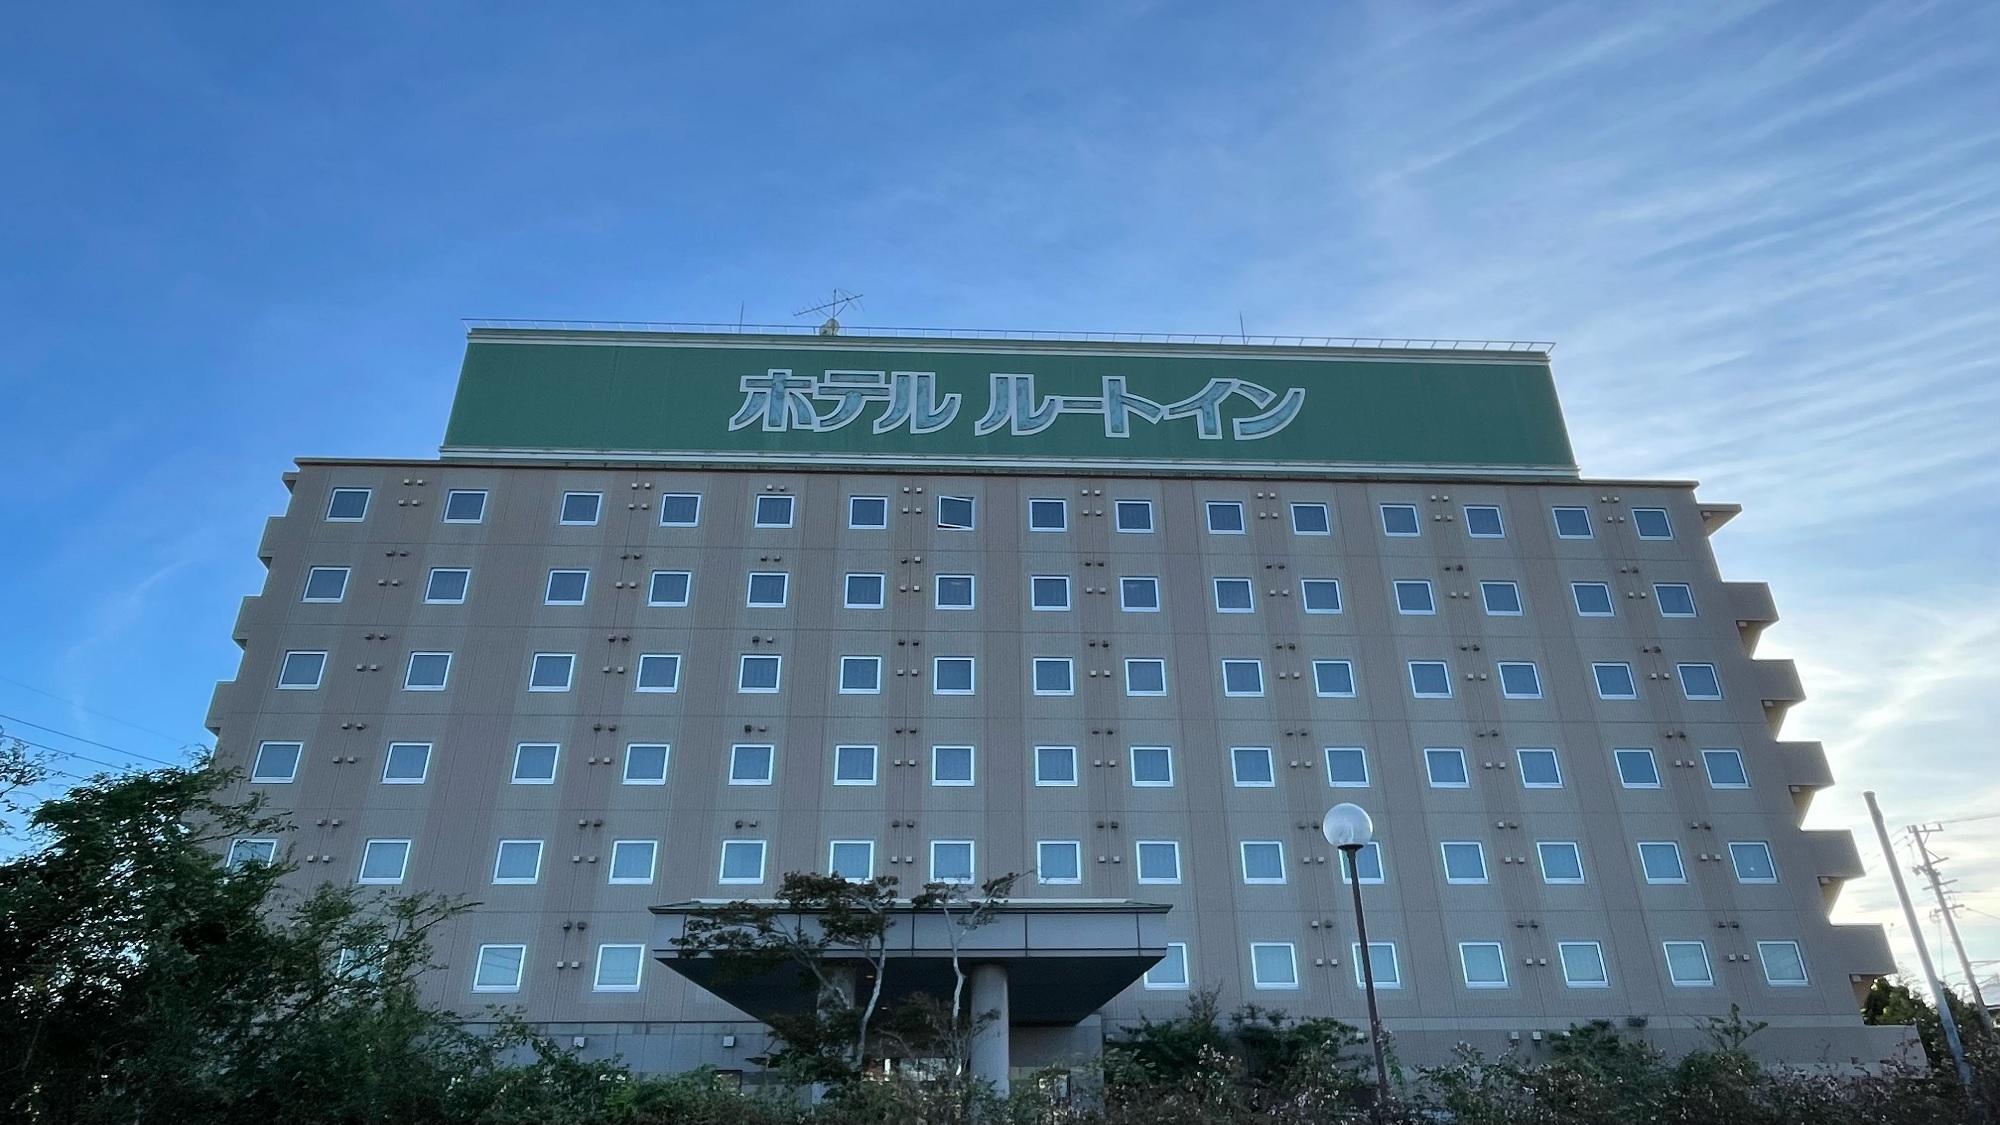 浜松まつりに参加！周辺でおすすめのホテルを教えてください。